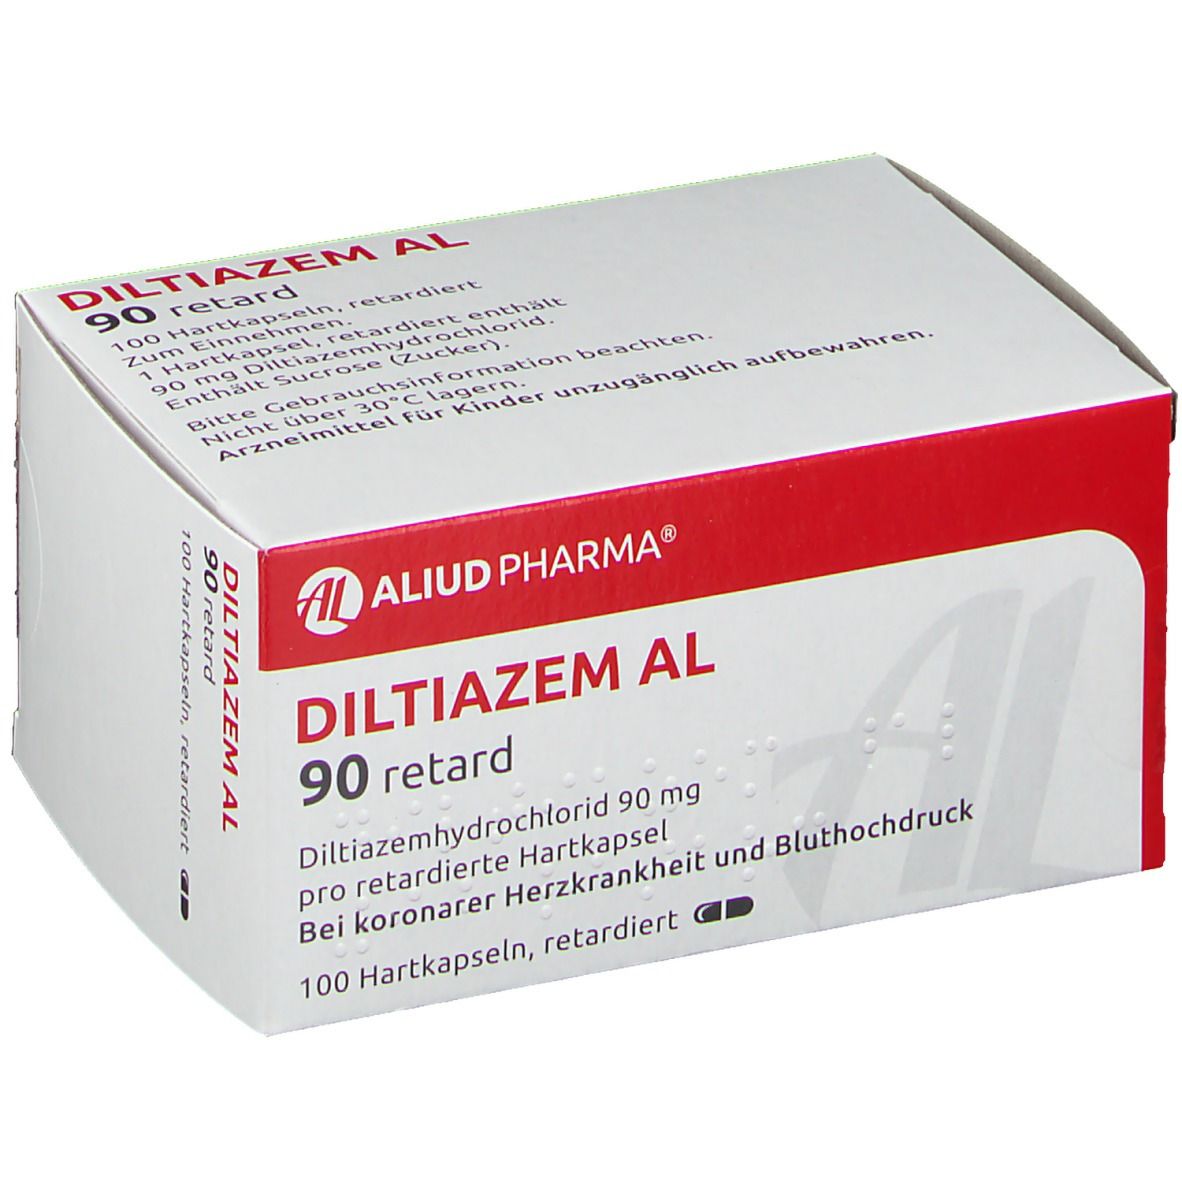 Diltiazem AL 90 100 St - shop-apotheke.com